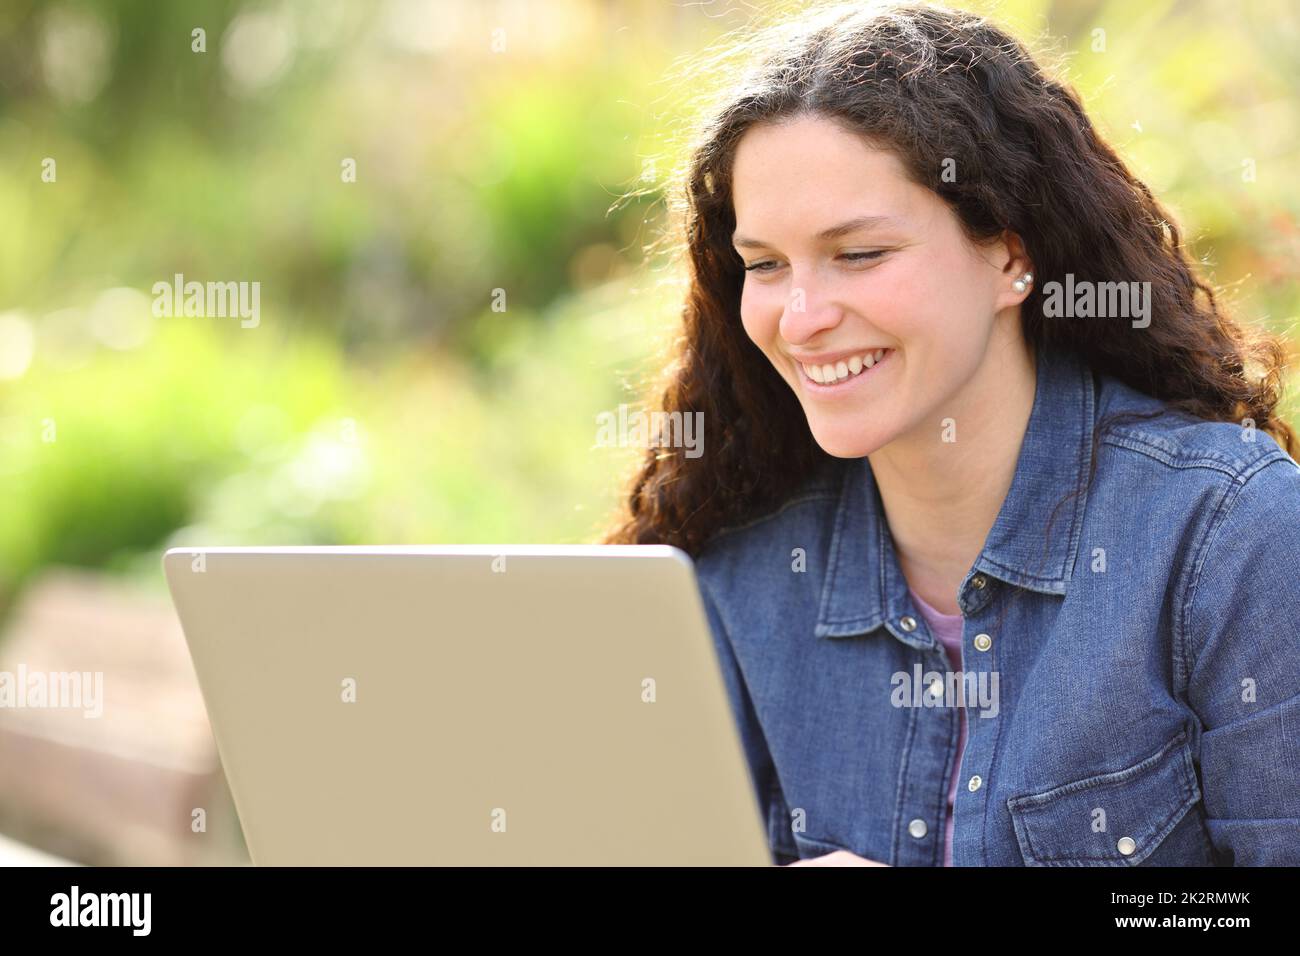 Bonne femme utilisant un ordinateur portable dans un parc Banque D'Images